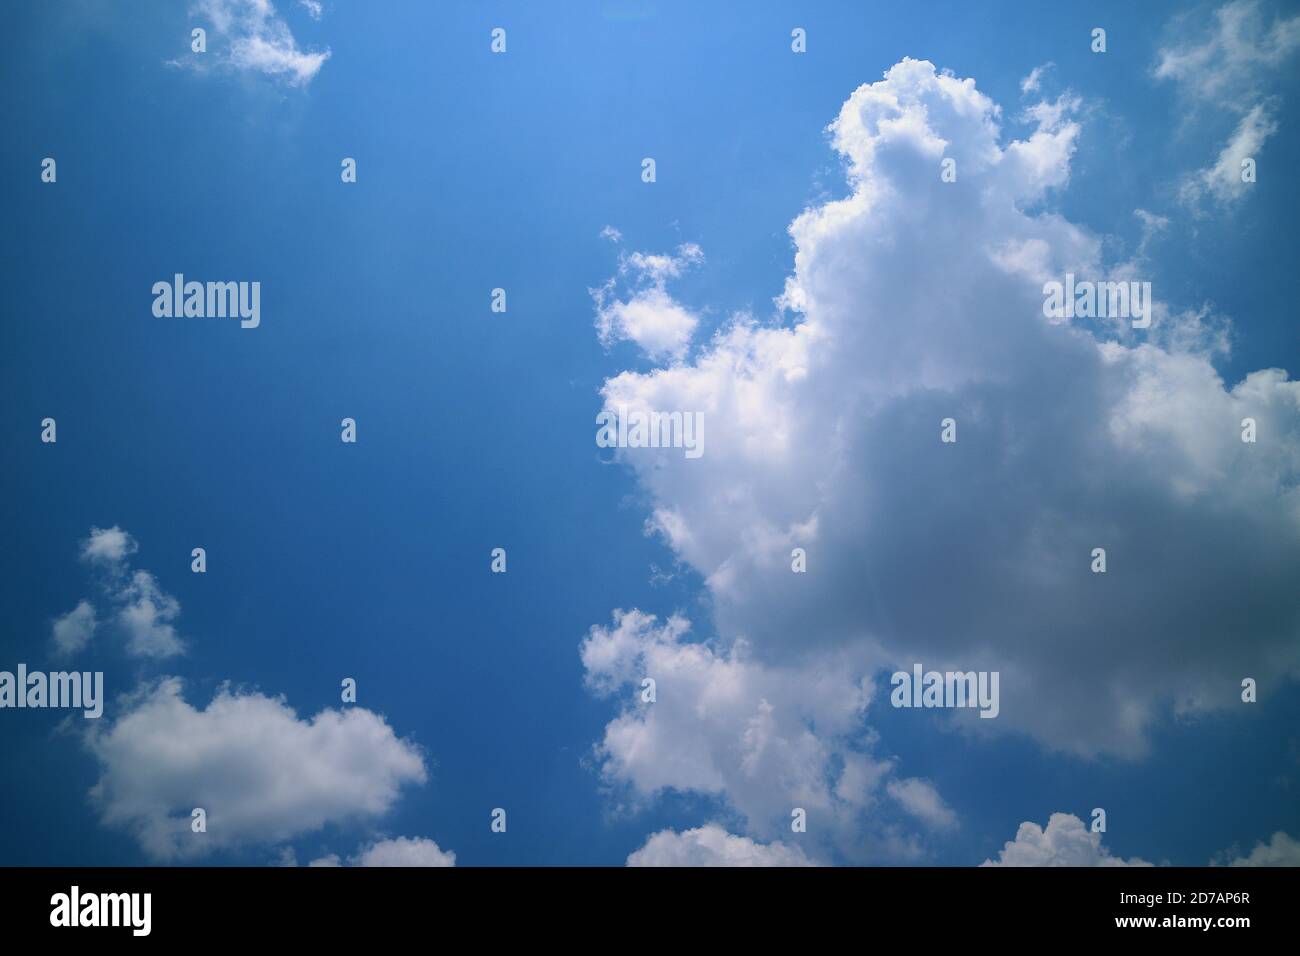 Schöner blauer Himmel Hintergrund mit weißen Wolken. Himmel und Wolken während des Tages im Sommer. Weiße flauschige Wolken in den blauen Himmel. Stockfoto